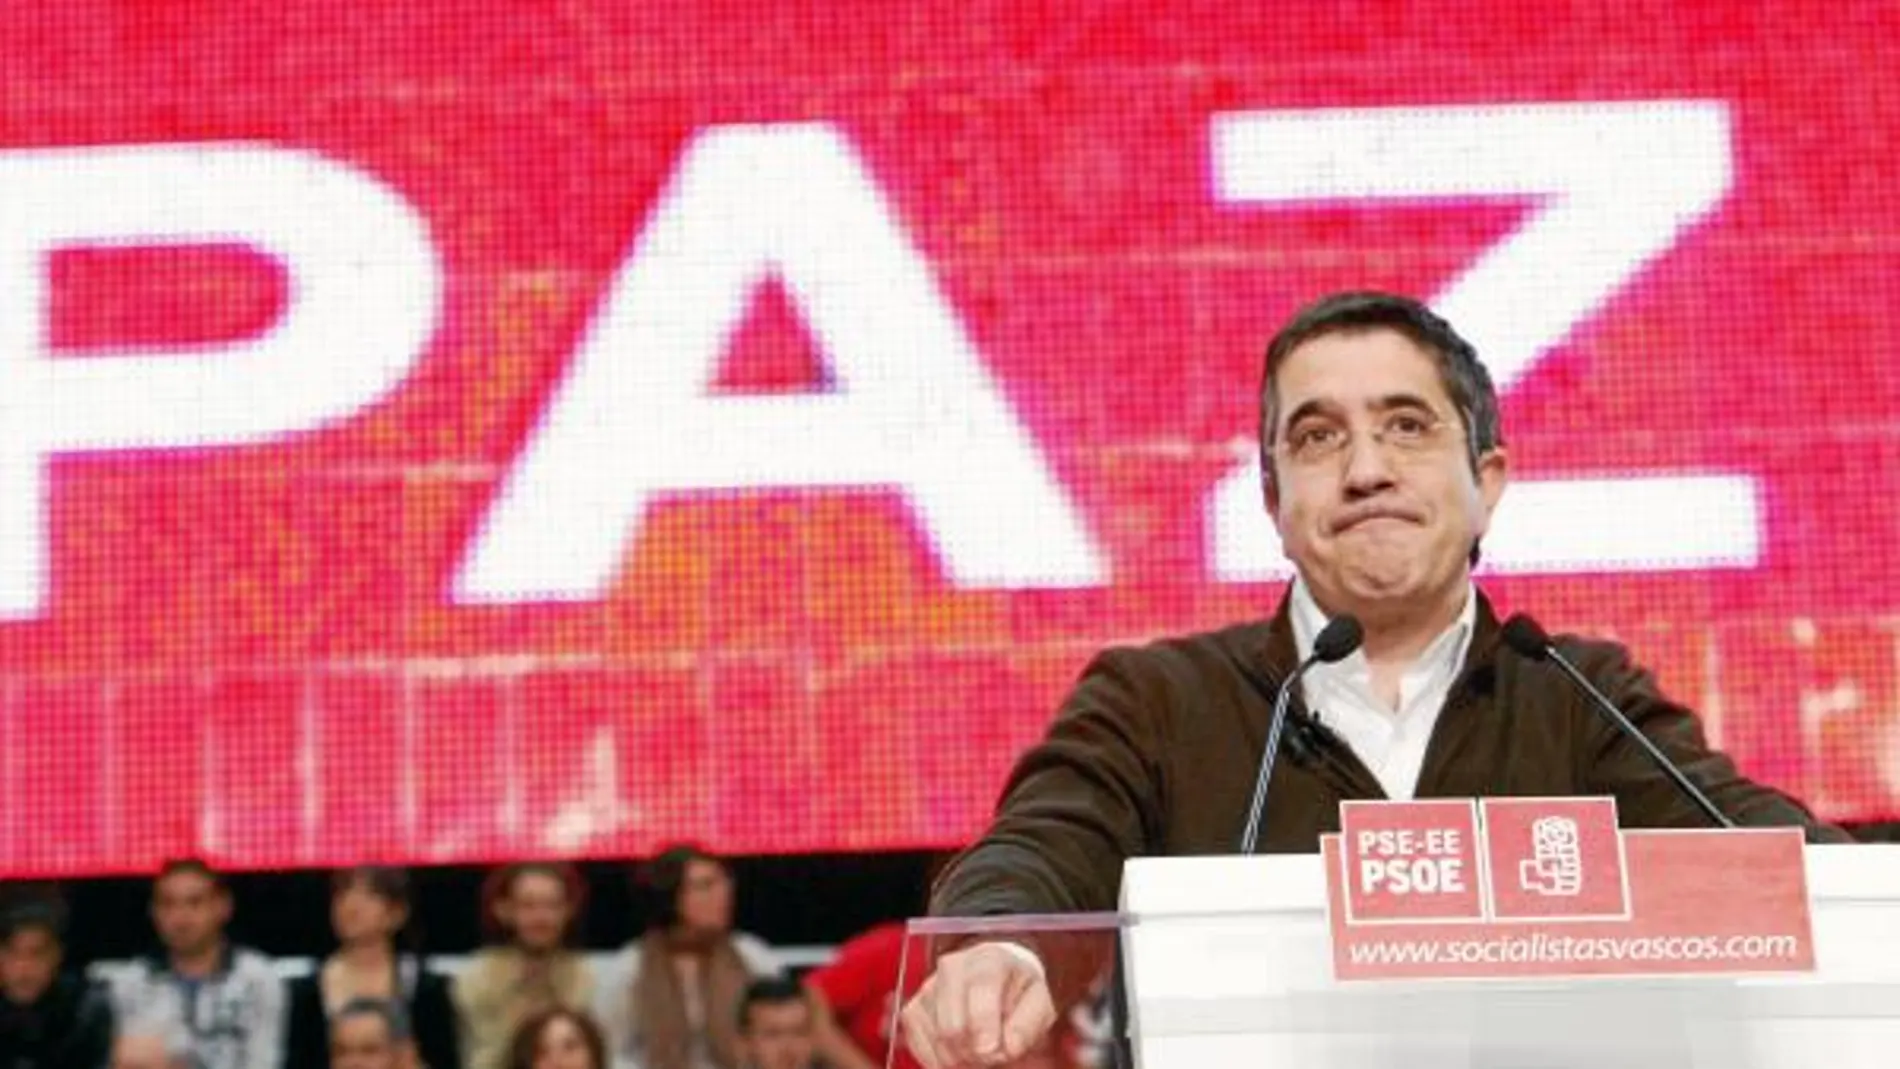 El lendakari del Gobierno vasco, Patxi López, en una imagen tomada pocas semanas después de la fecha prevista por ETA para matarle